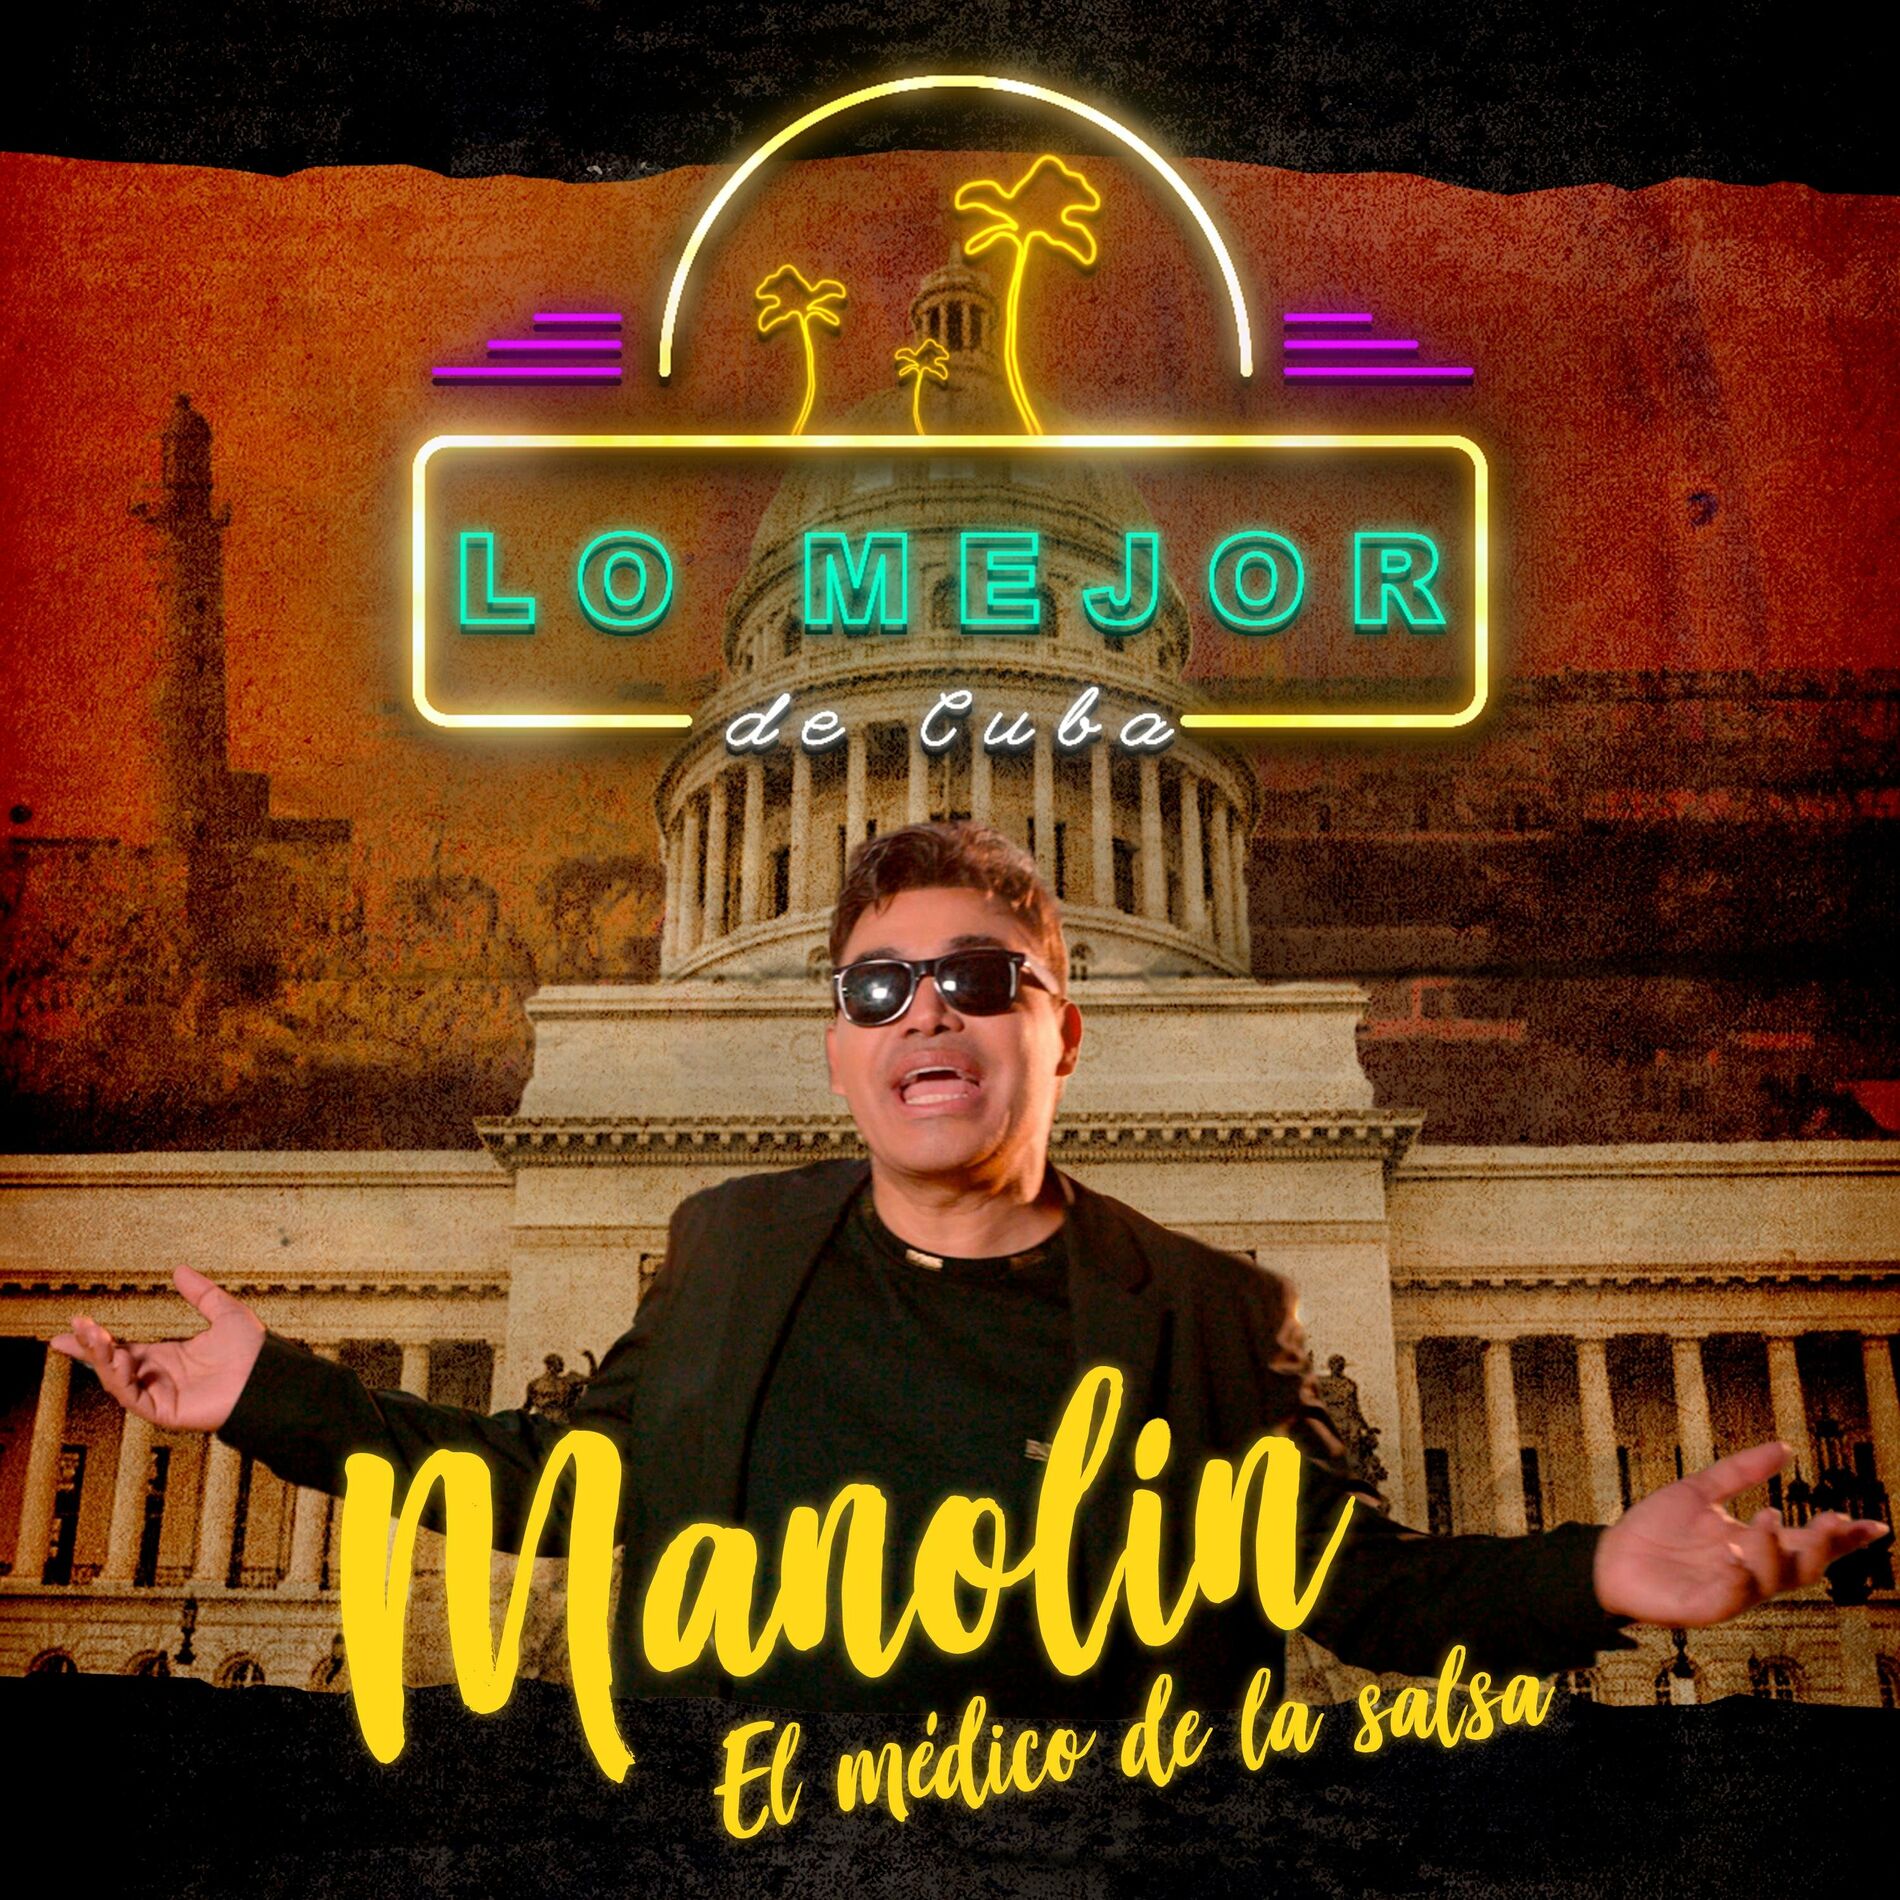 Manolin El Medico de la Salsa: albums